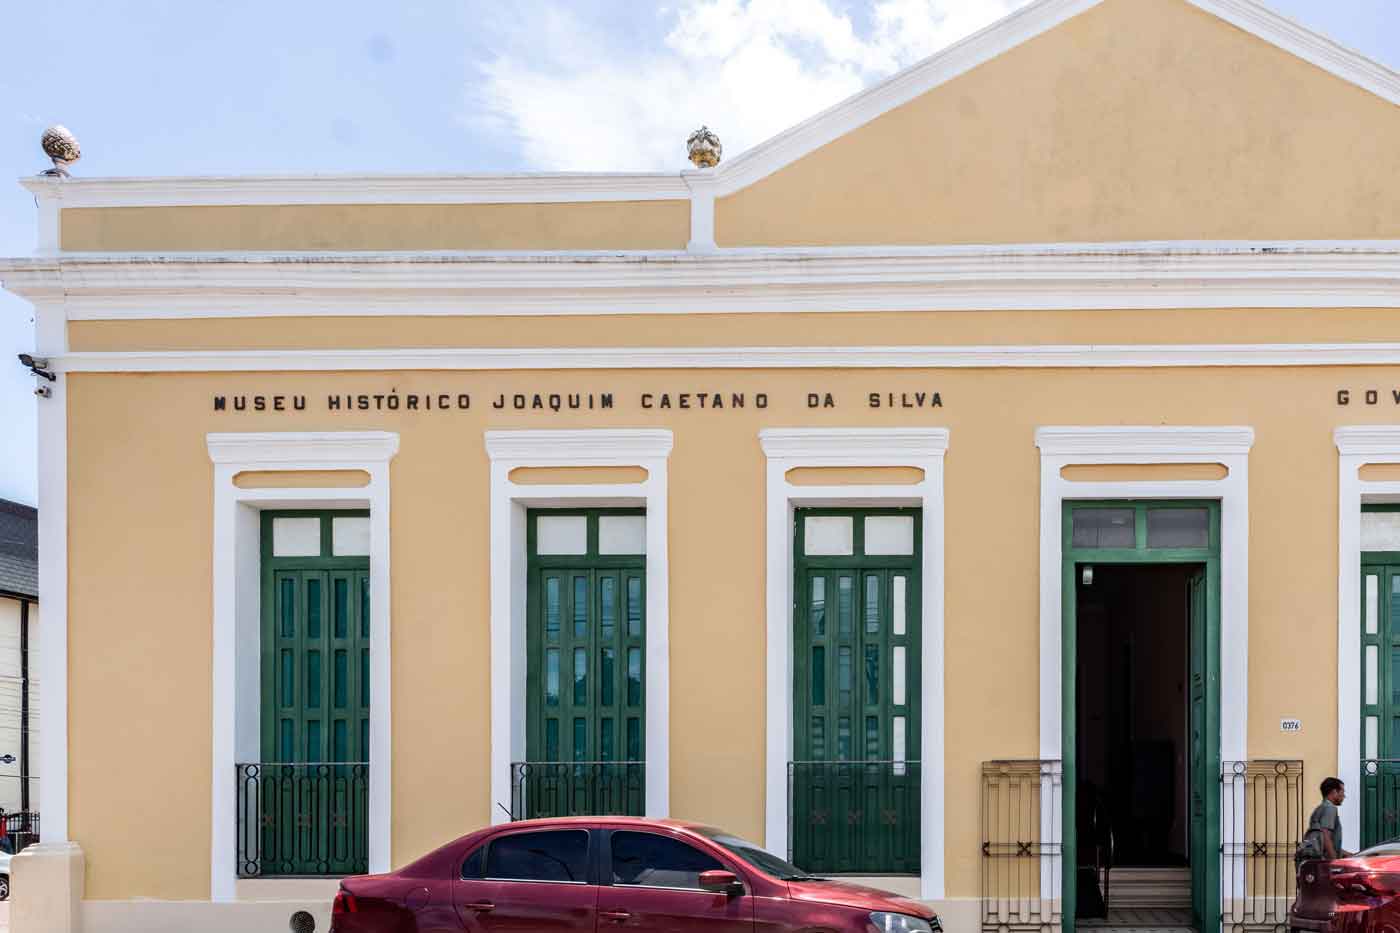 Museu Histórico Joaquim Caetano da Silva